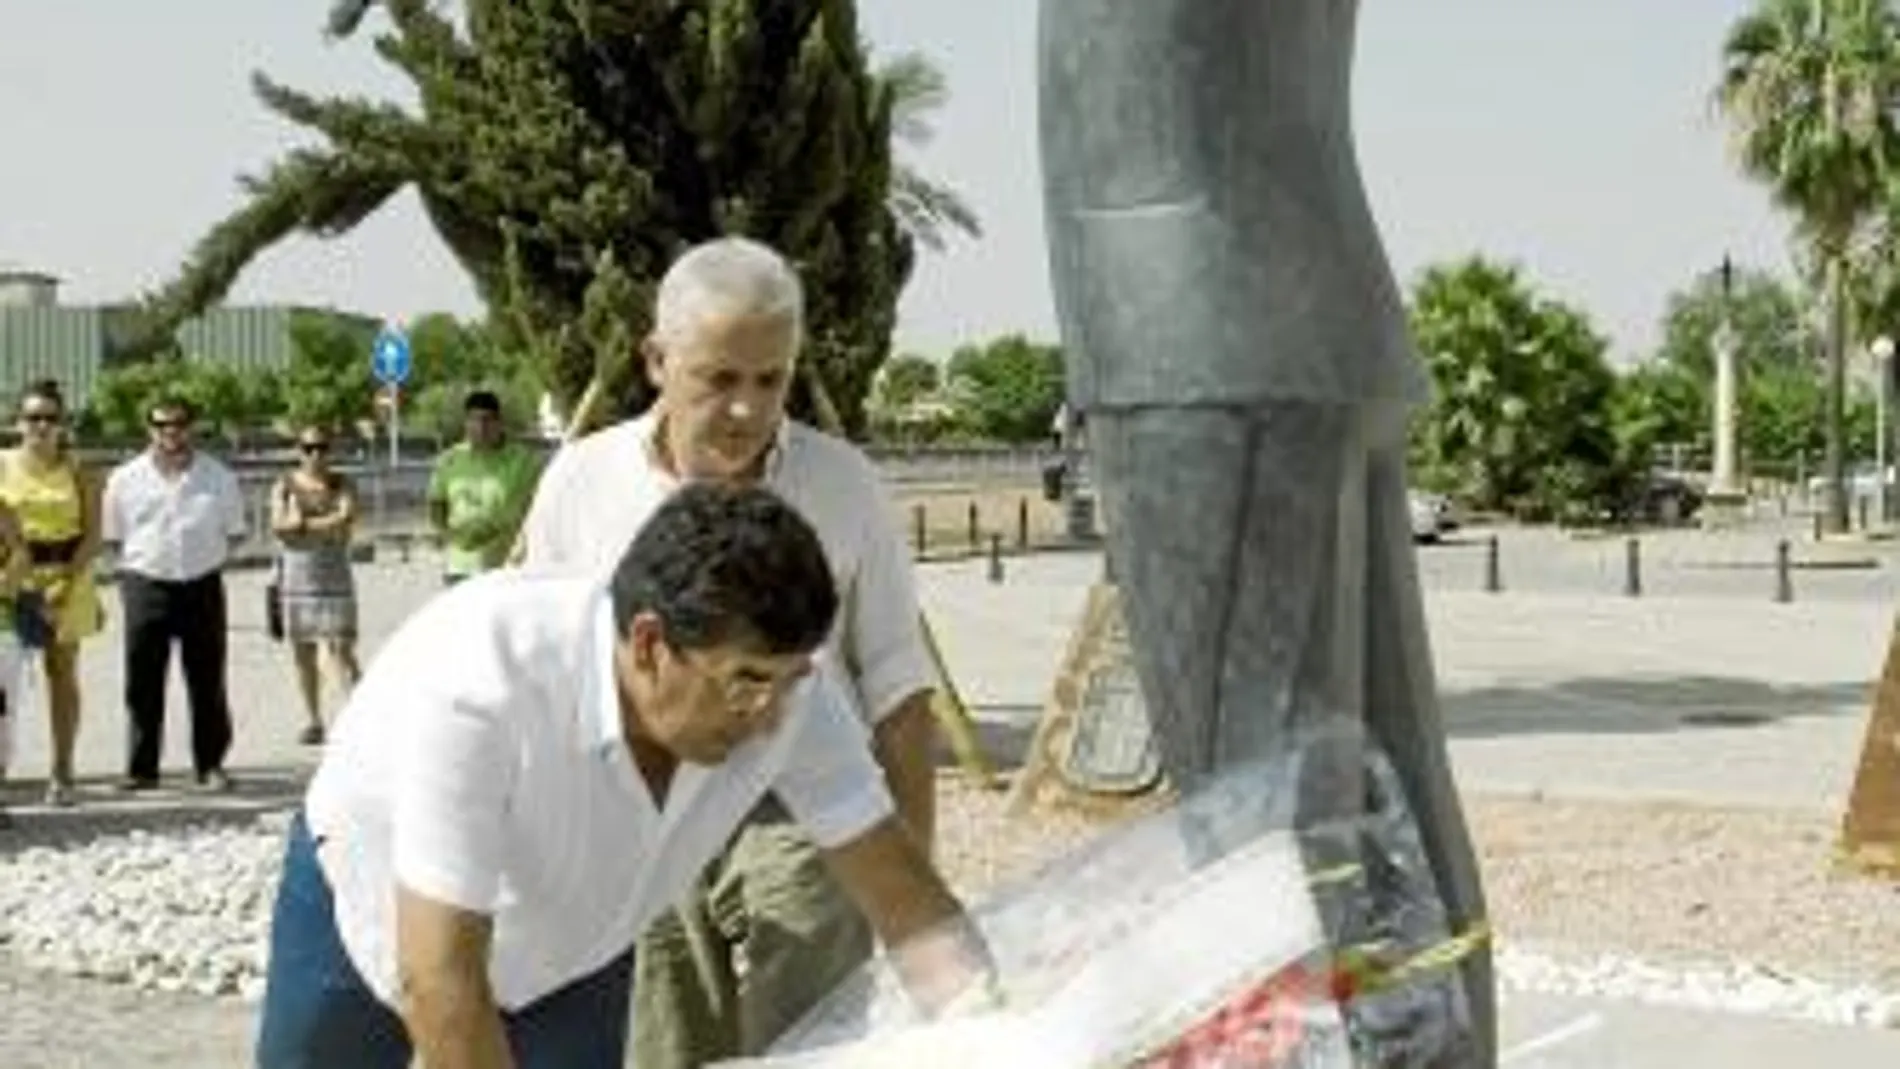 El coordinador general de IU-LV-CA, Diego Valderas, deposita un ramo de flores ante la estatua de Blas Infante, ubicada donde fue fusilado